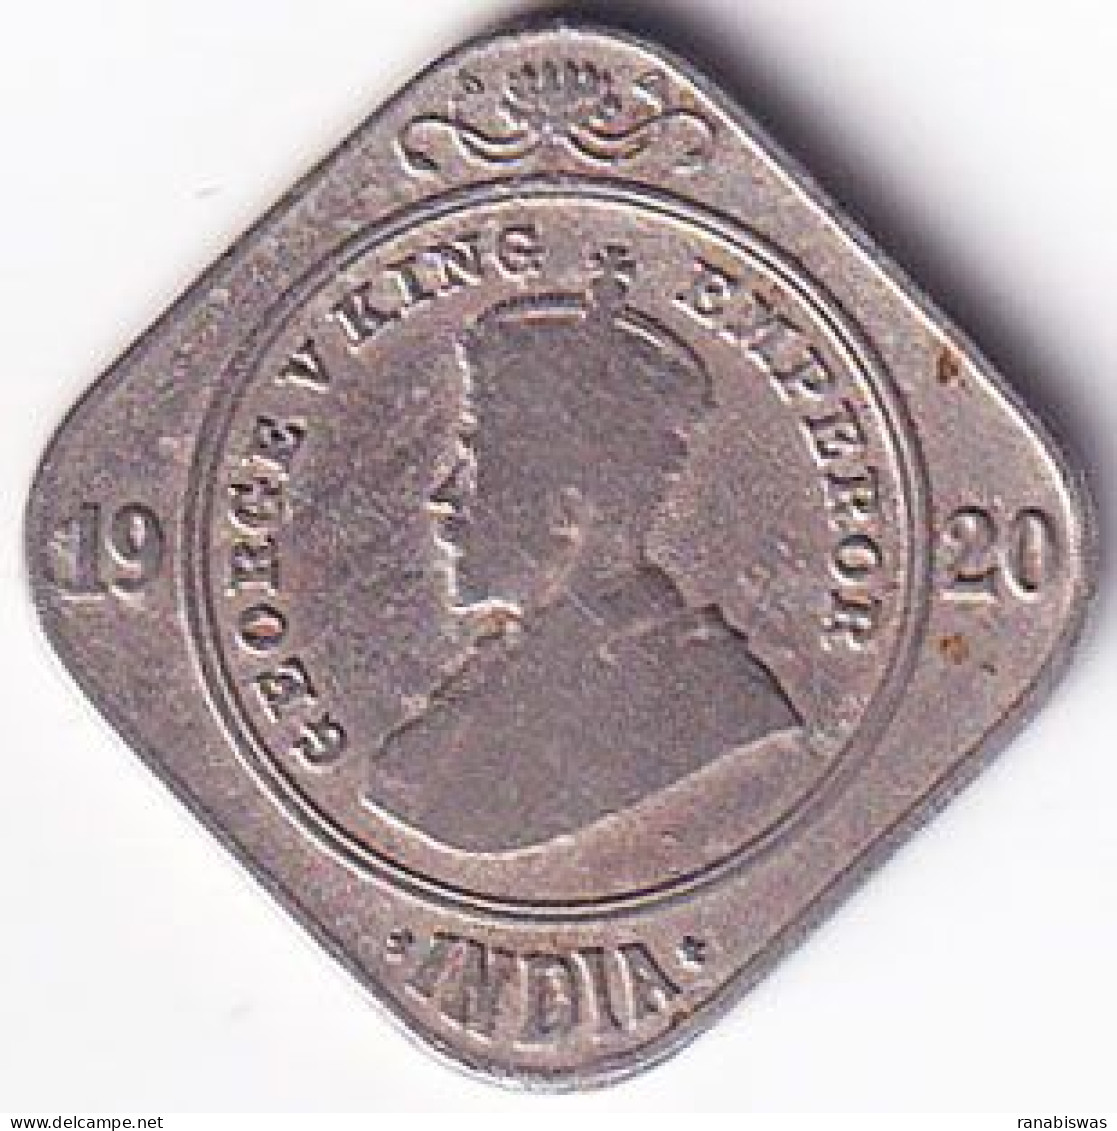 INDIA COIN LOT 174, 2 ANNAS 1920, CALCUTTA MINT, XF, RARE - Inde